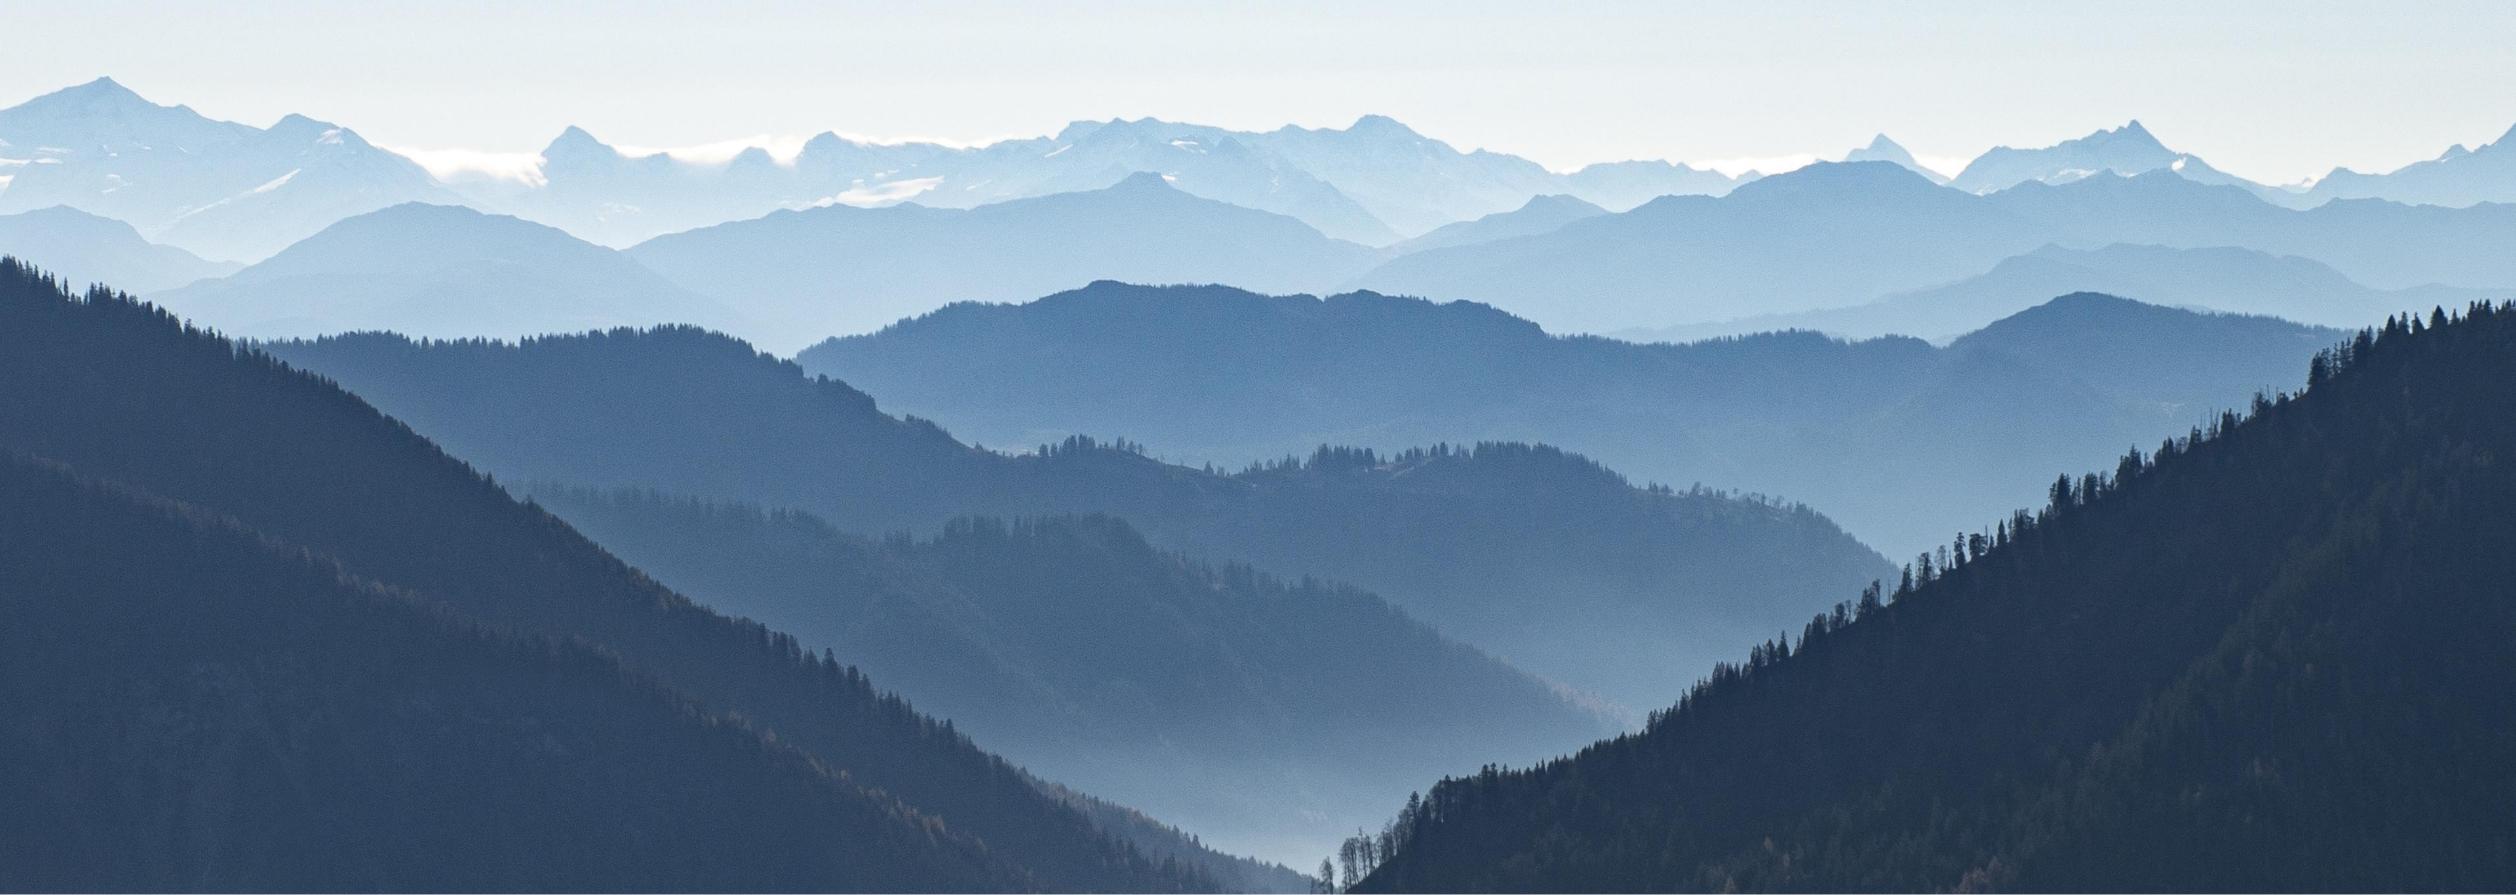 Misty mountain range